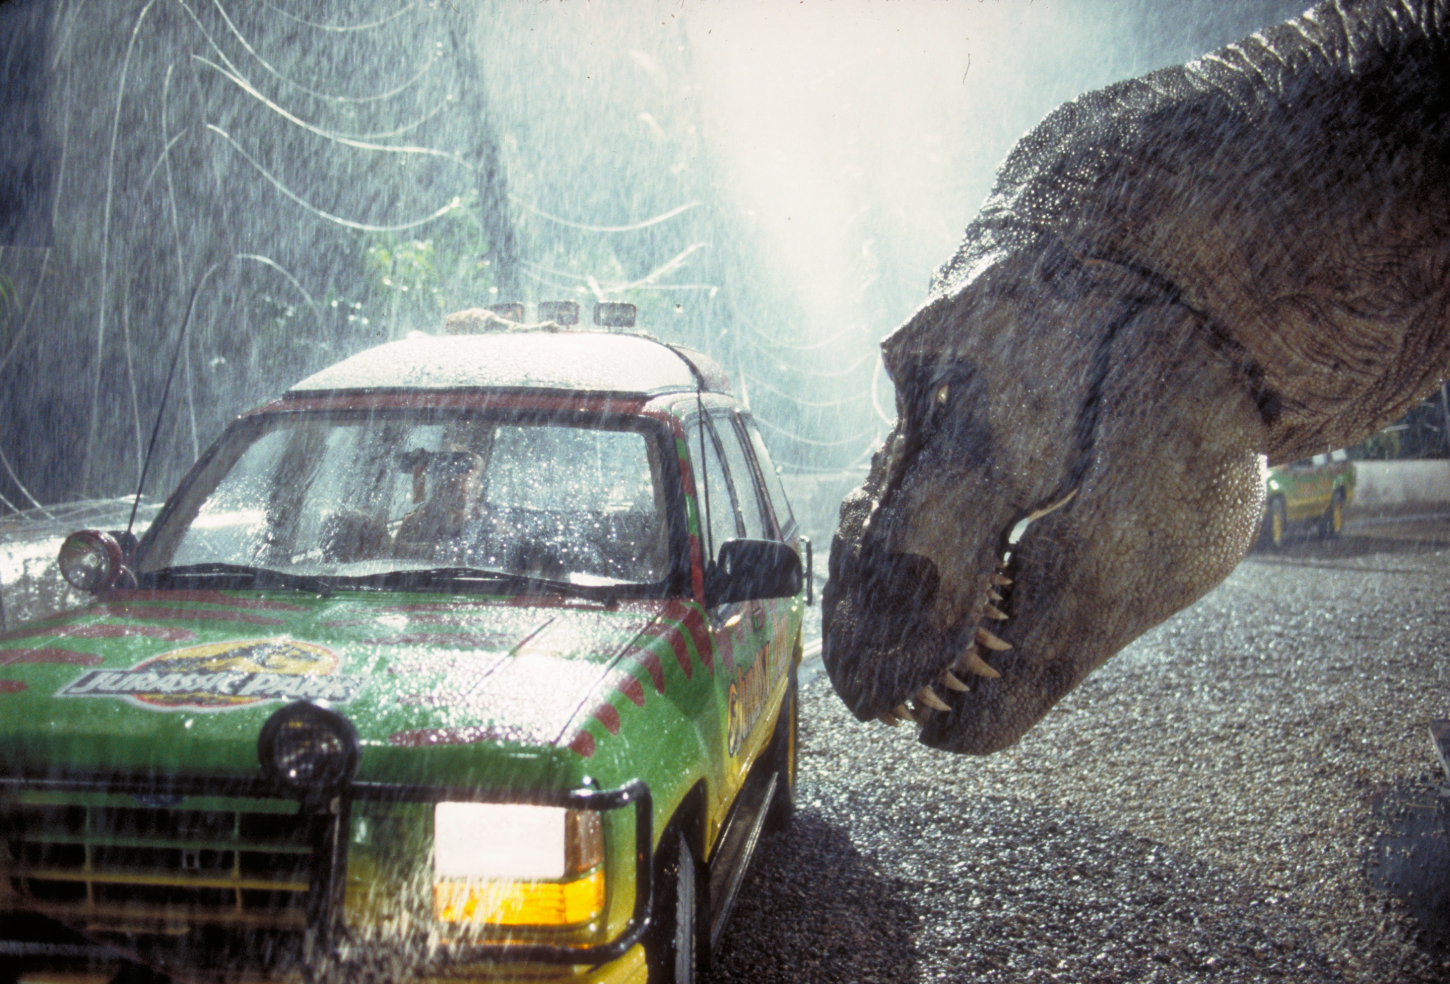 The Jurassic Park 1993 Ford Explorer